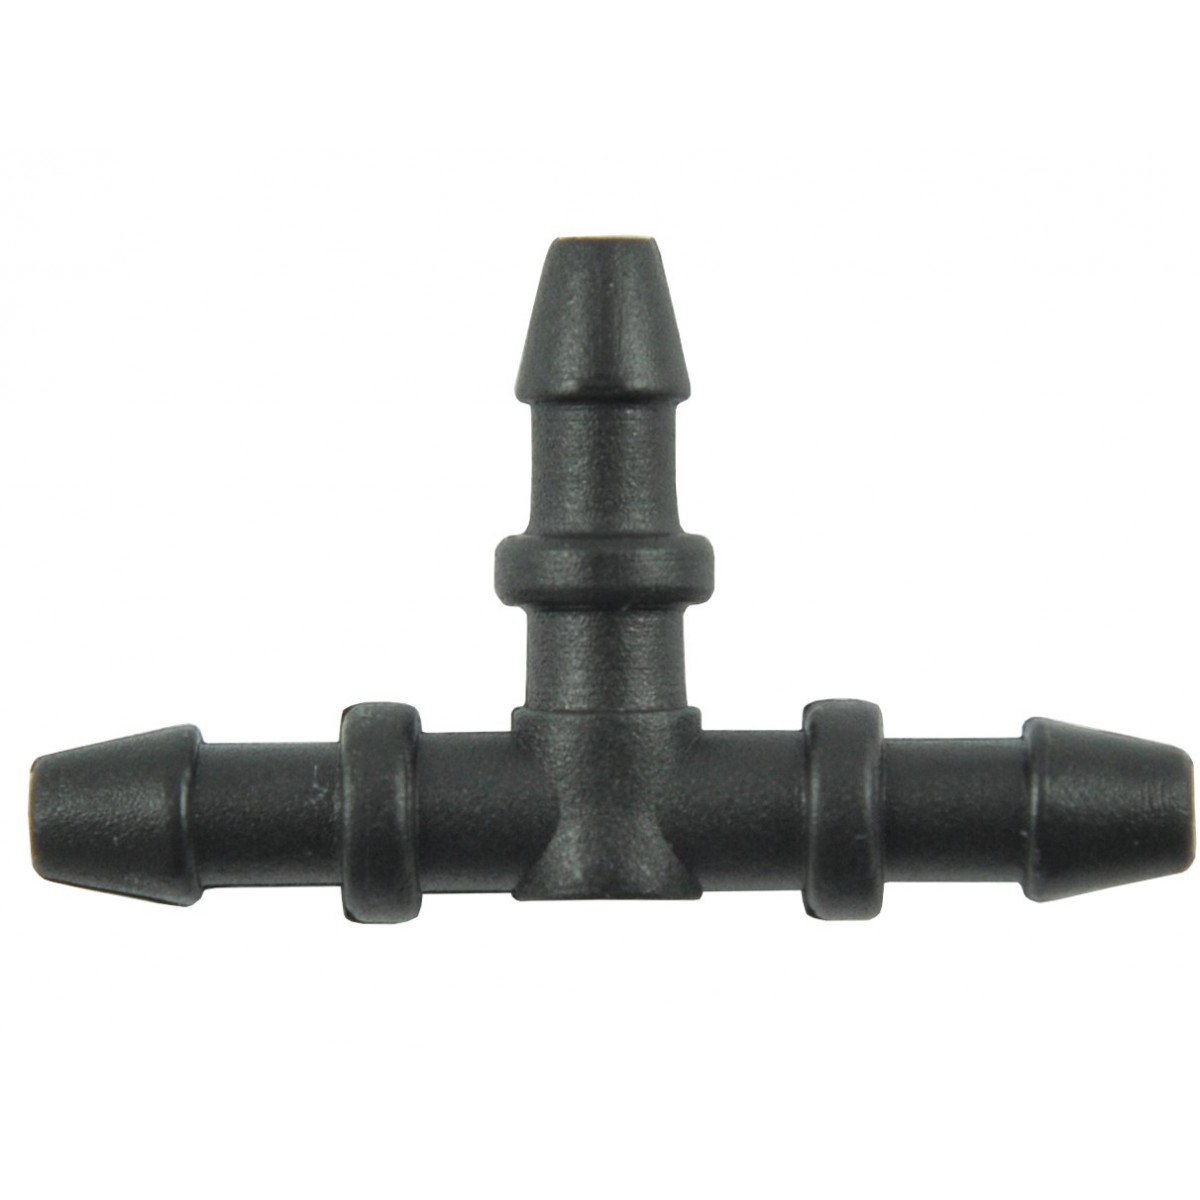 Tee 37x22x5 mm, connector, nipple, PLASTIK vacuum hose distributor